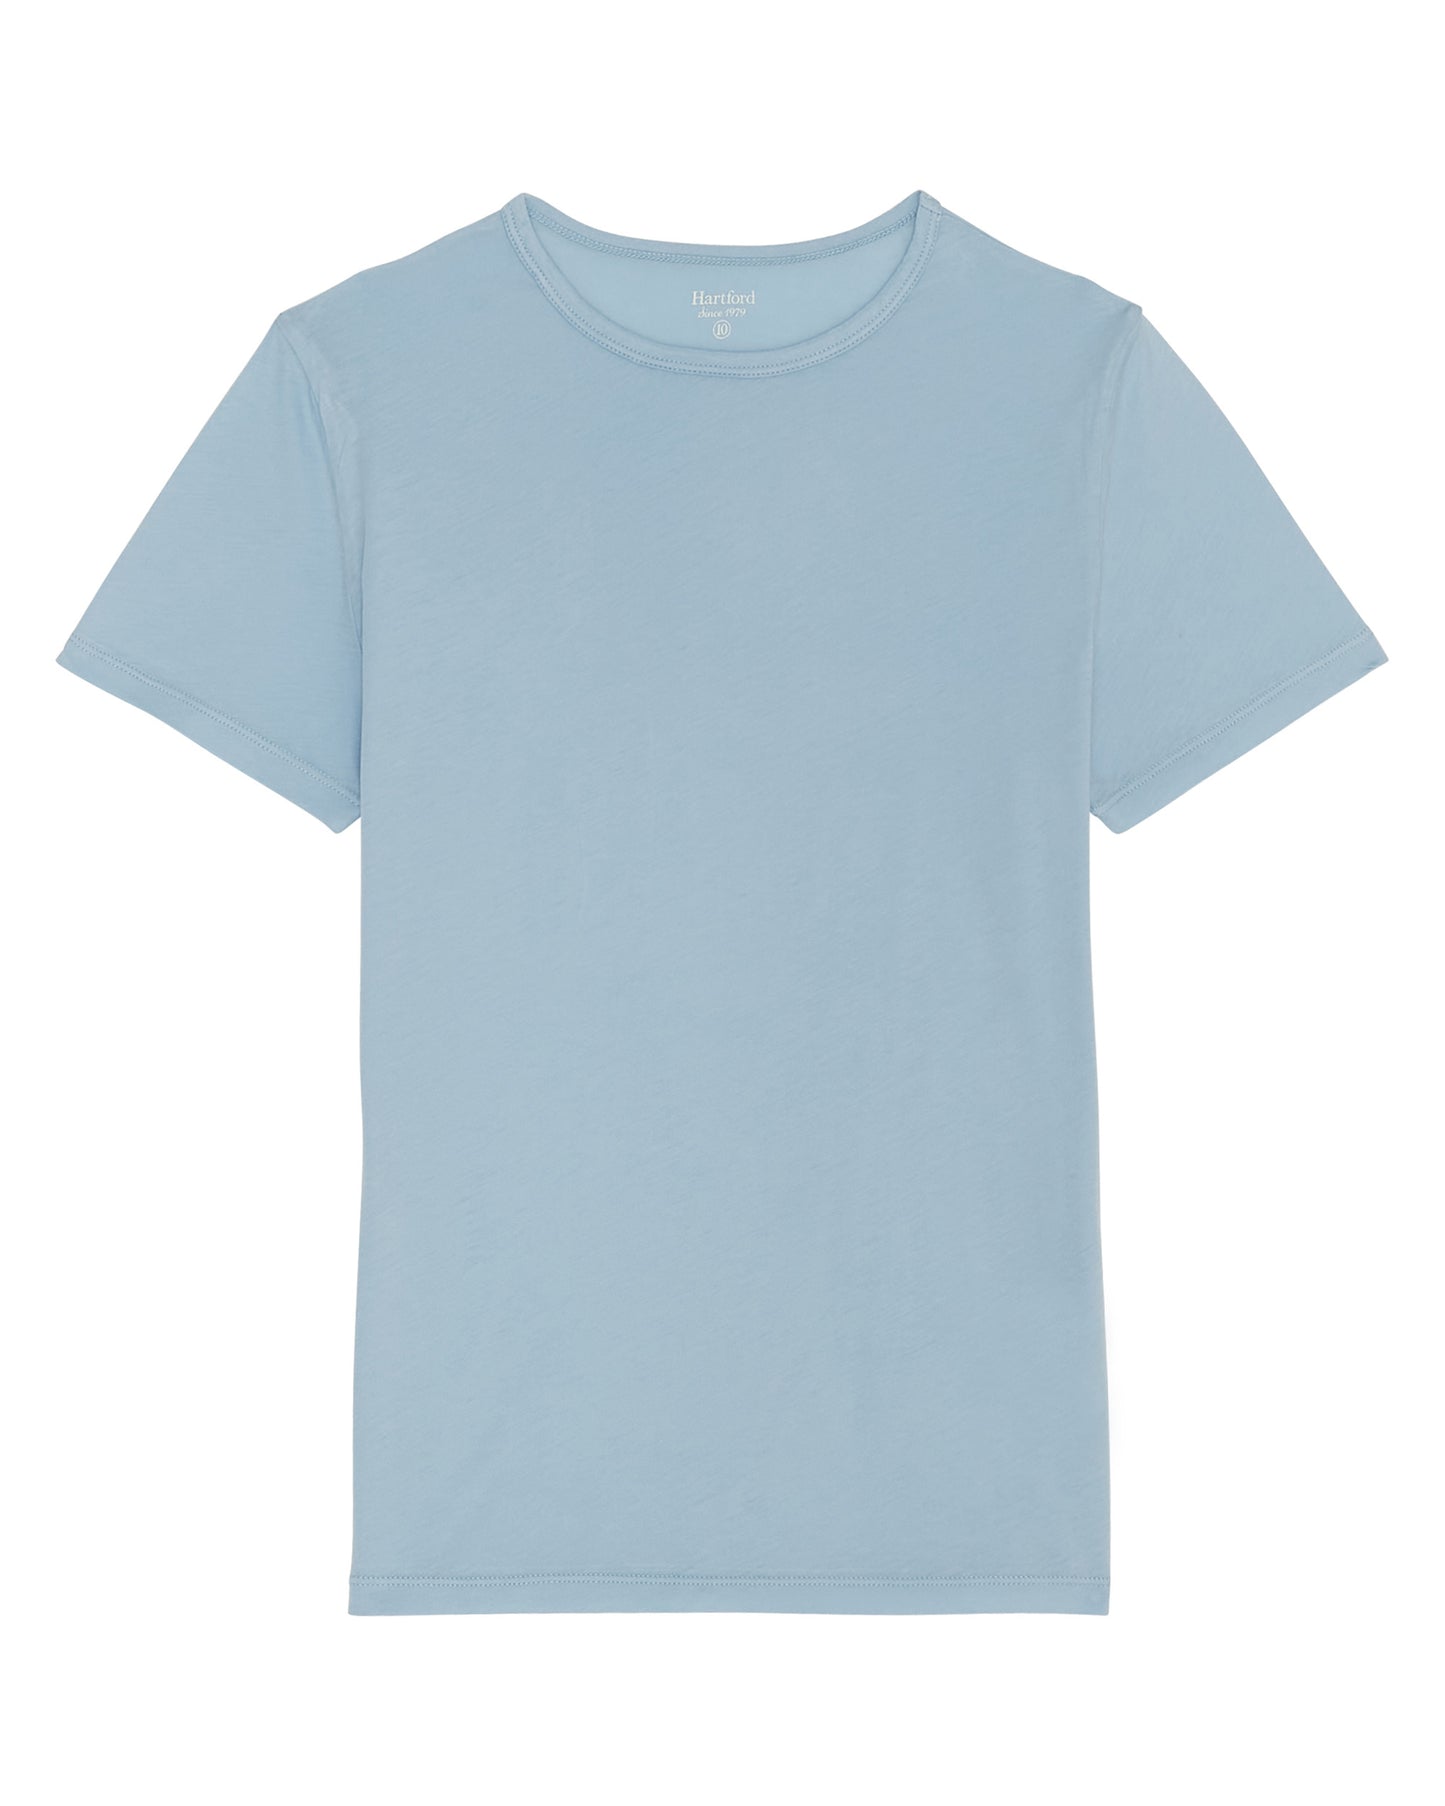 Tee Shirt Garçon en jersey léger Bleu clair